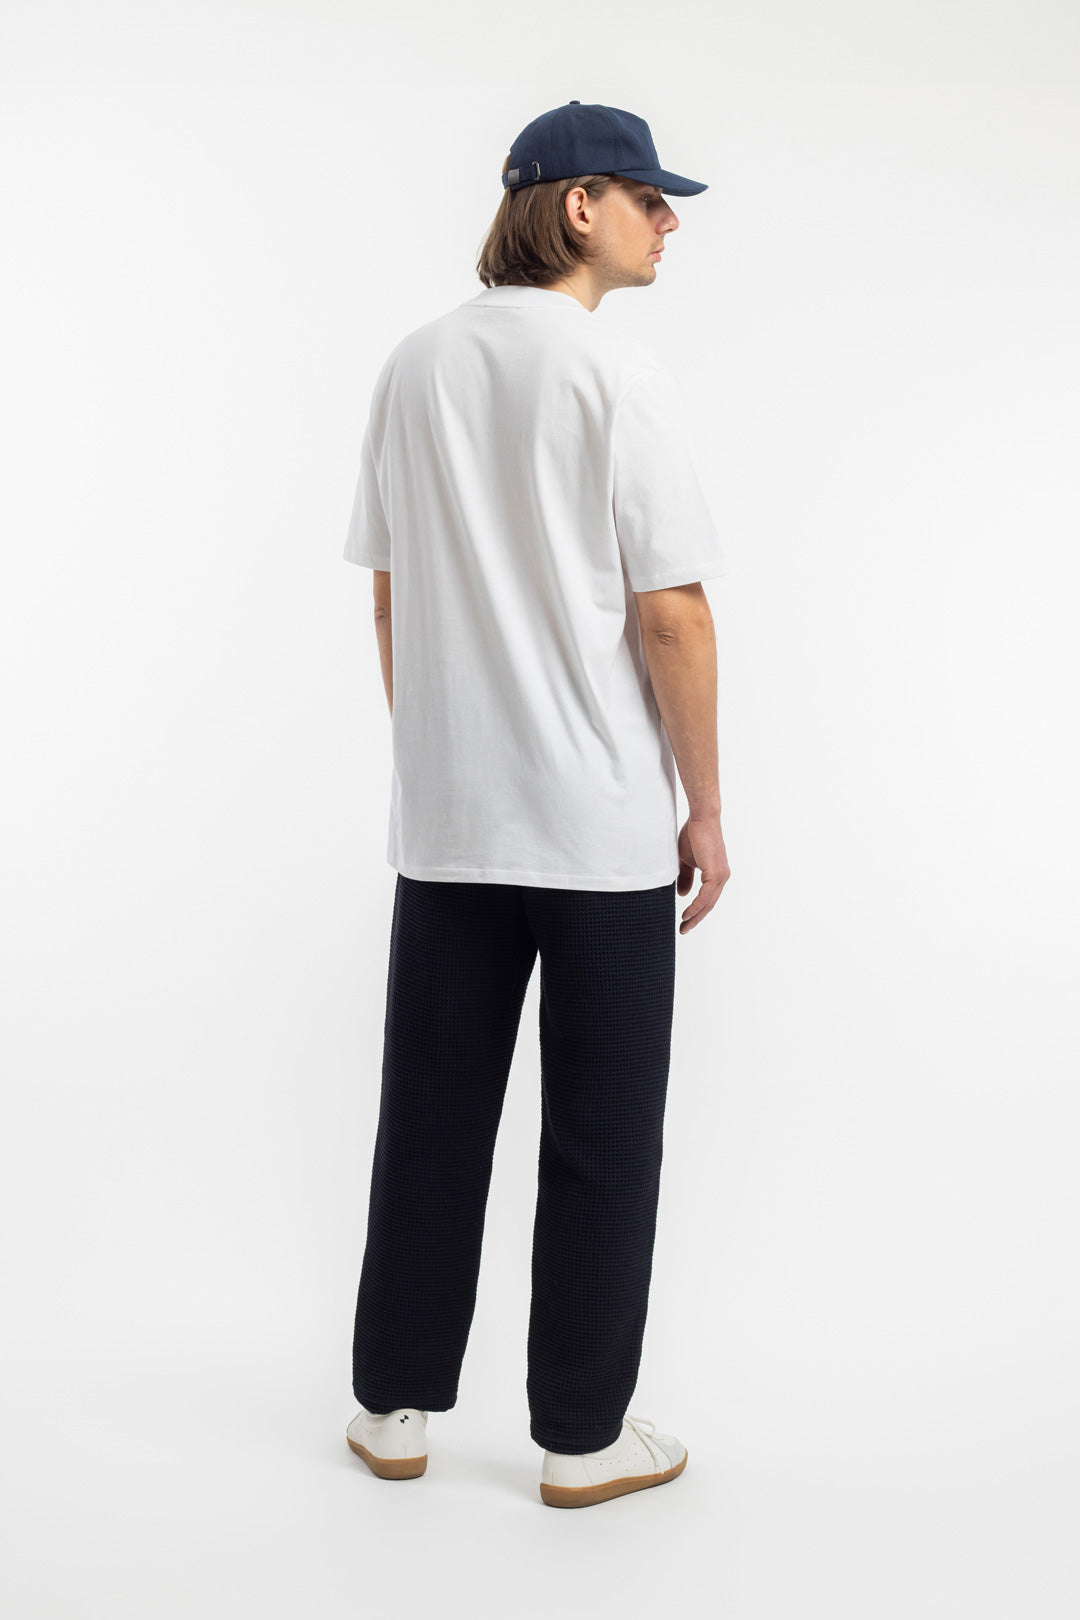 Weisses T-Shirt aus 100% Bio-Baumwolle von Rotholz